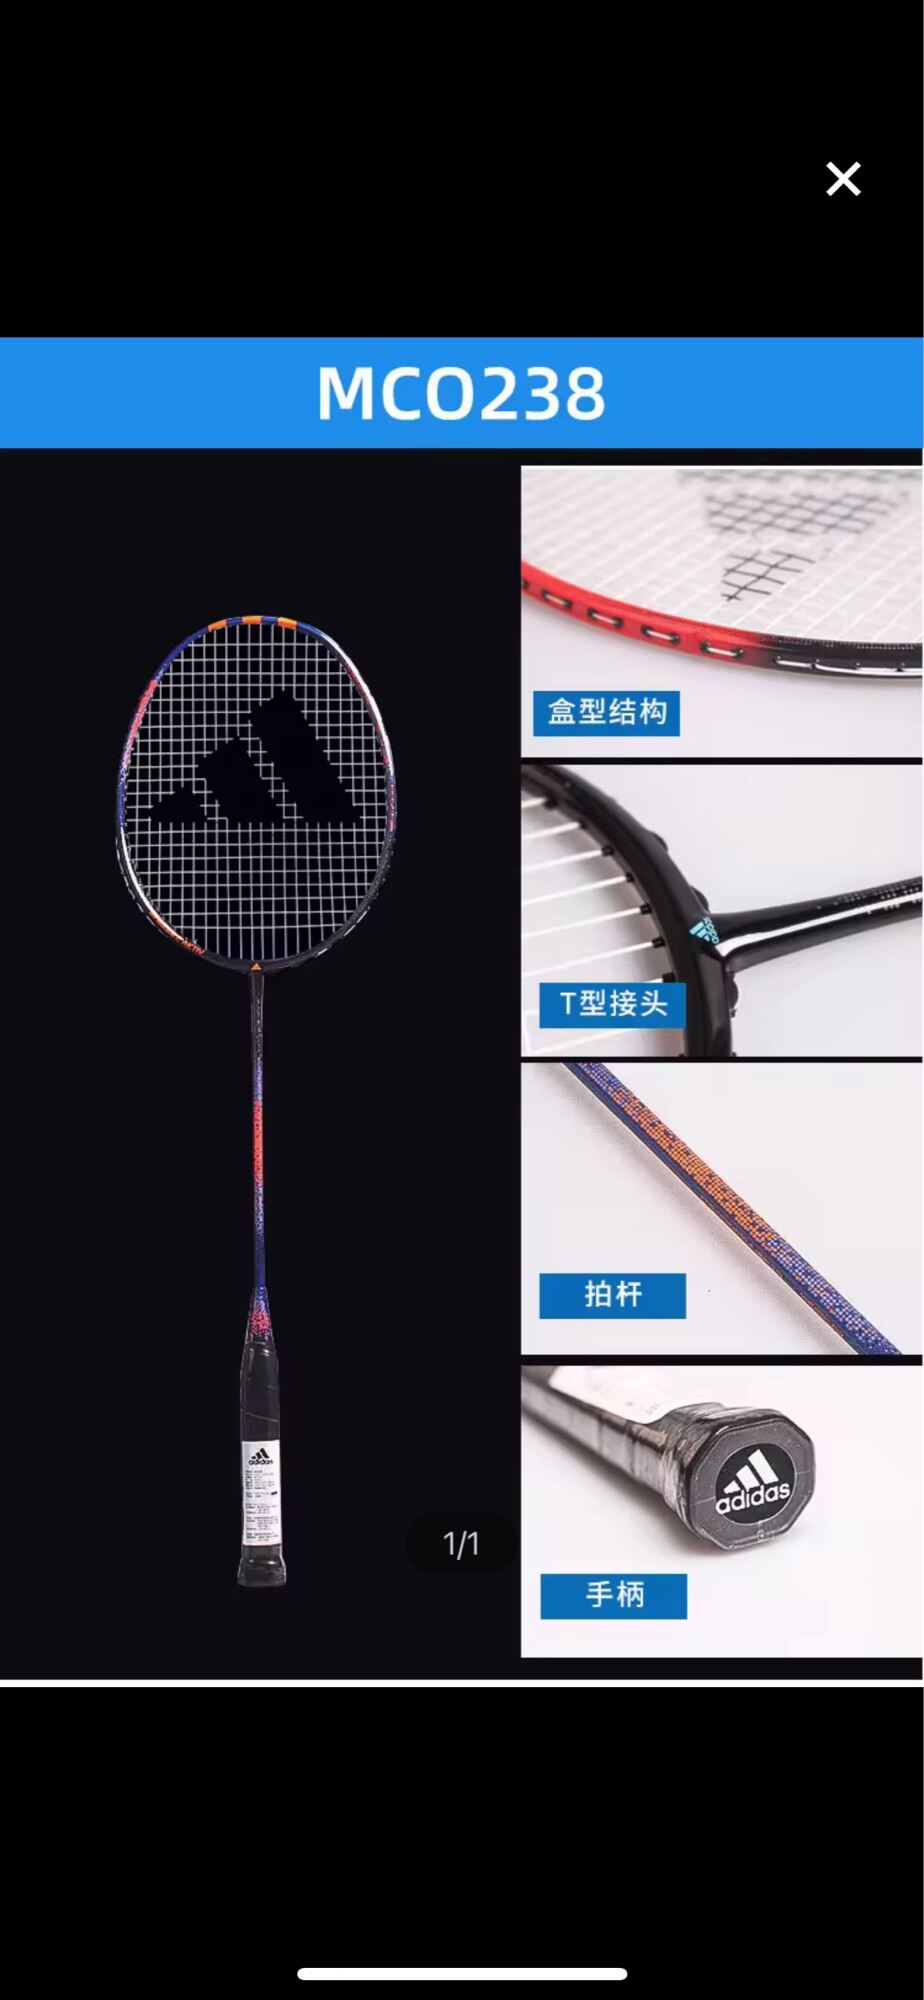 Adidas vợt cầu lông cao cấp cacbon siêu nhẹ bền bỉ chuyên nghiệp luyện tập